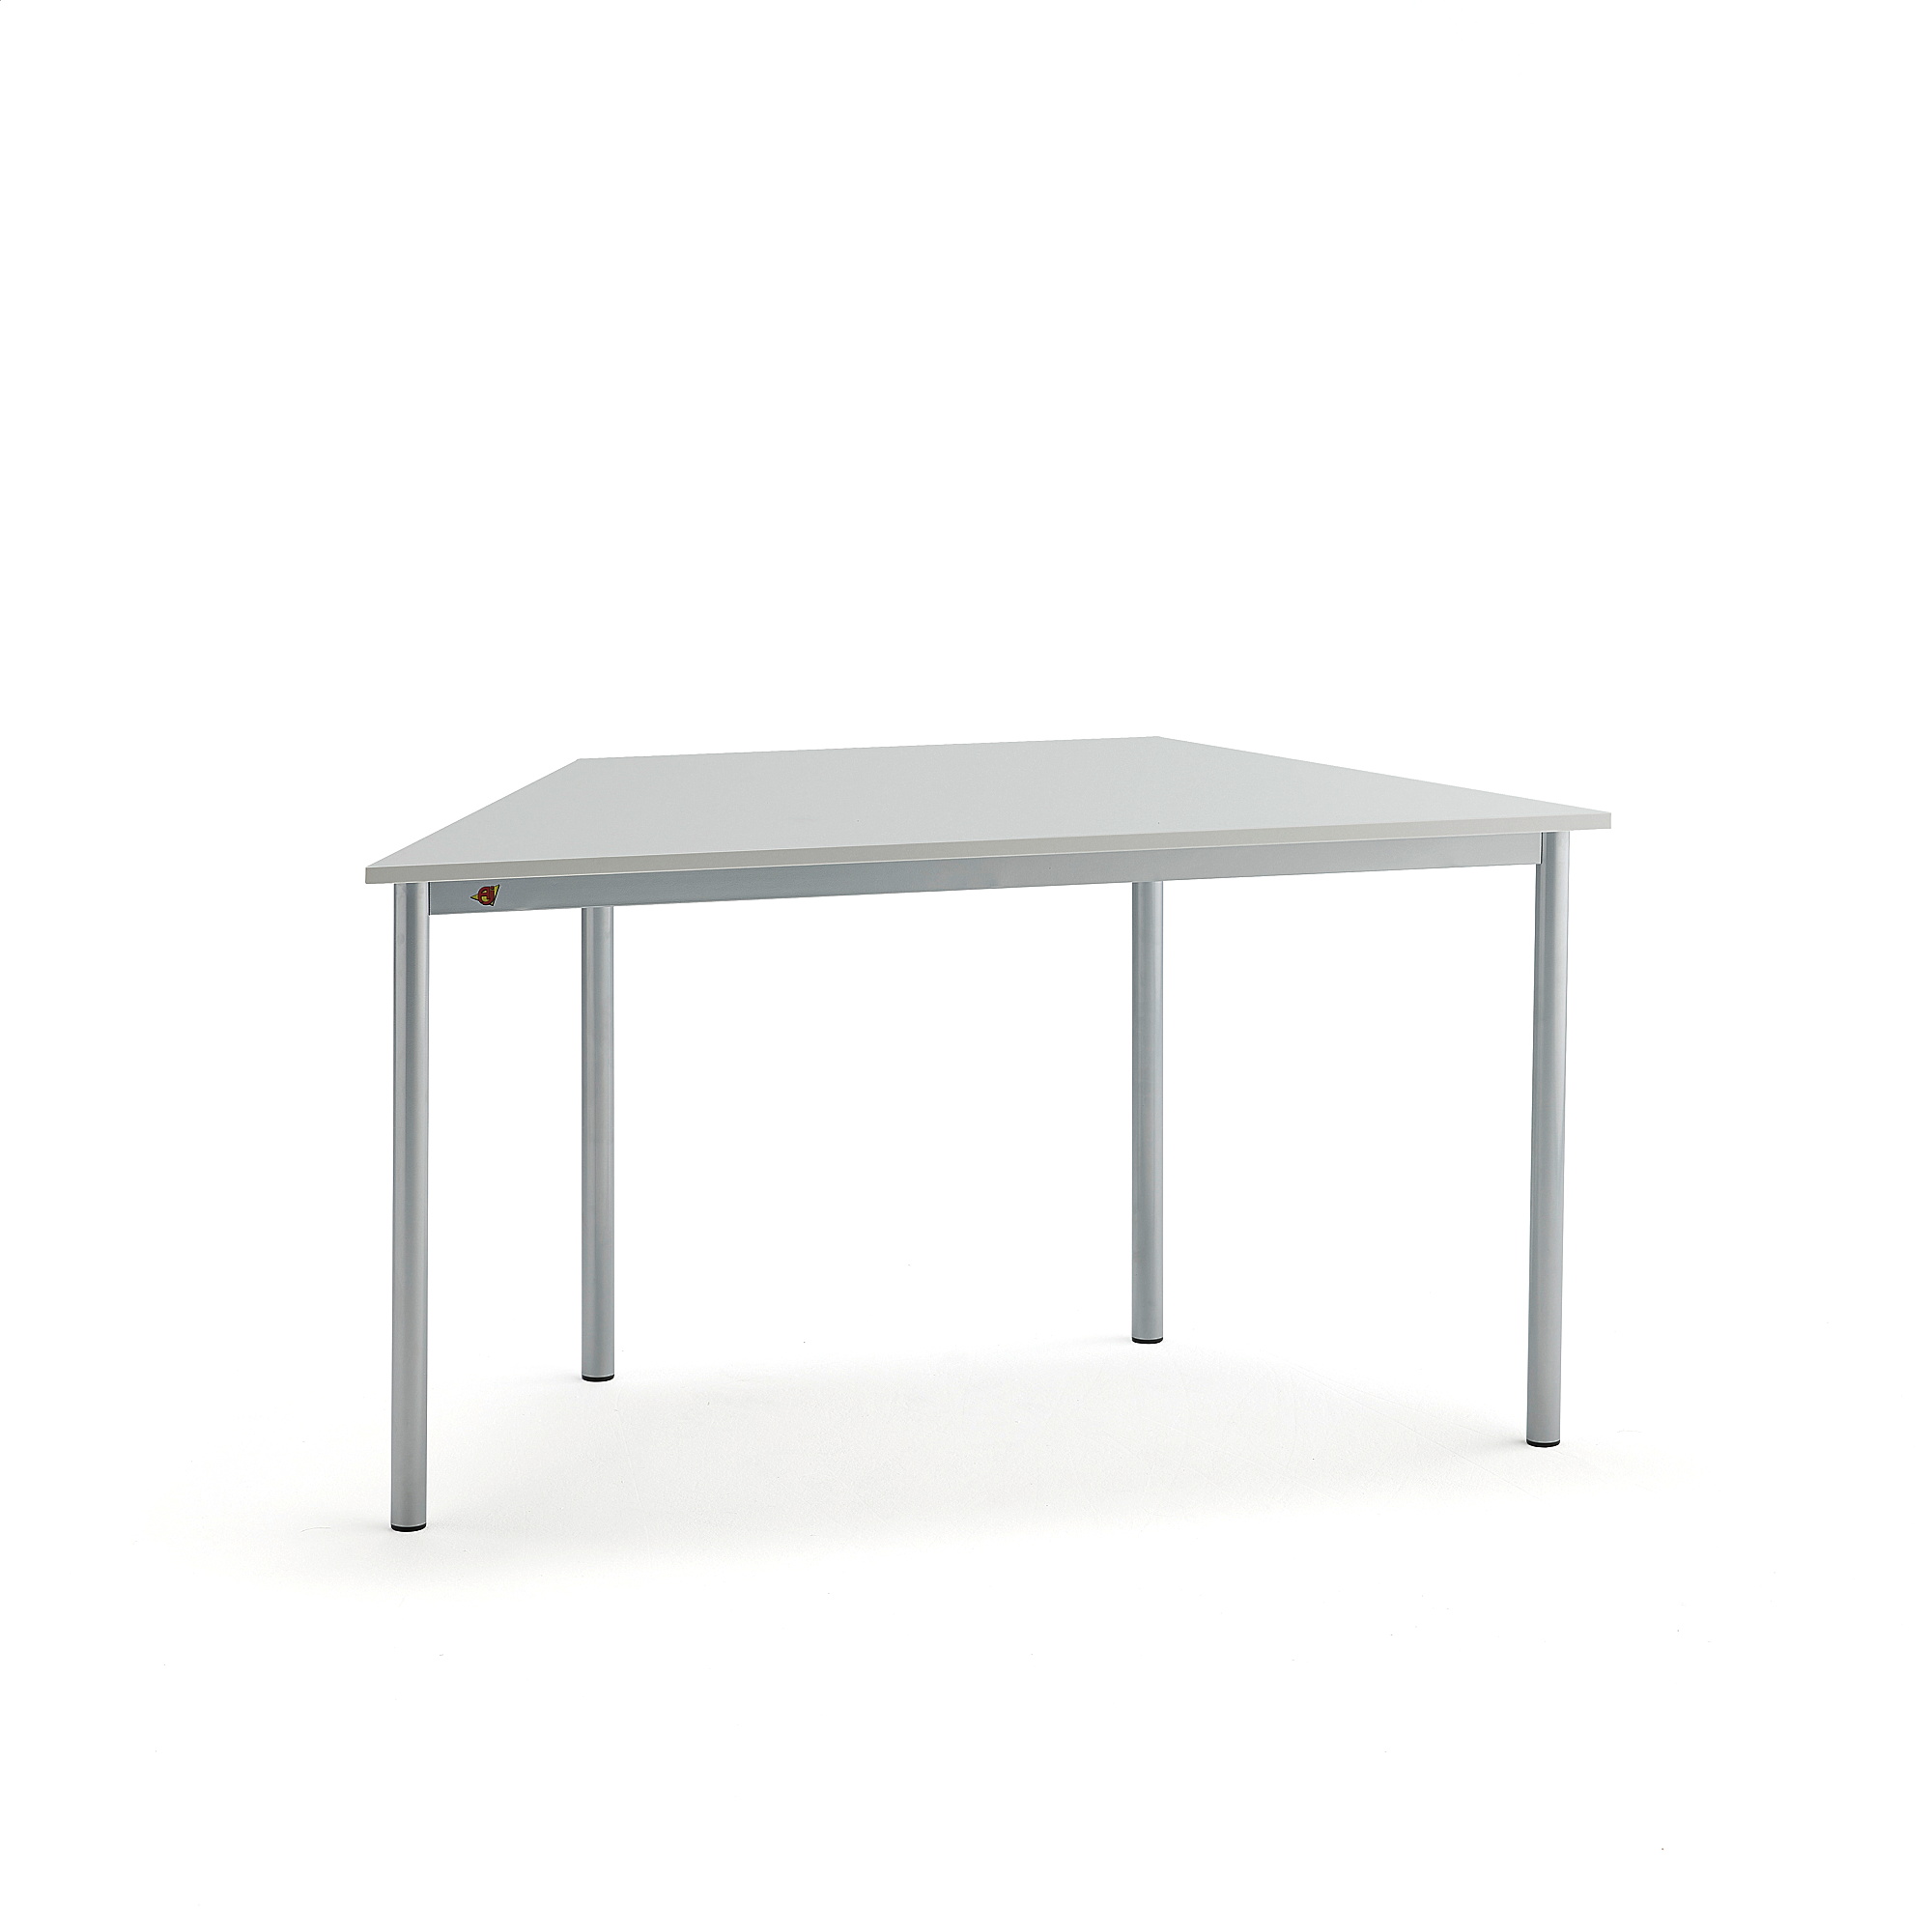 Stůl SONITUS TRAPETS, 1200x600x720 mm, stříbrné nohy, HPL deska tlumící hluk, šedá